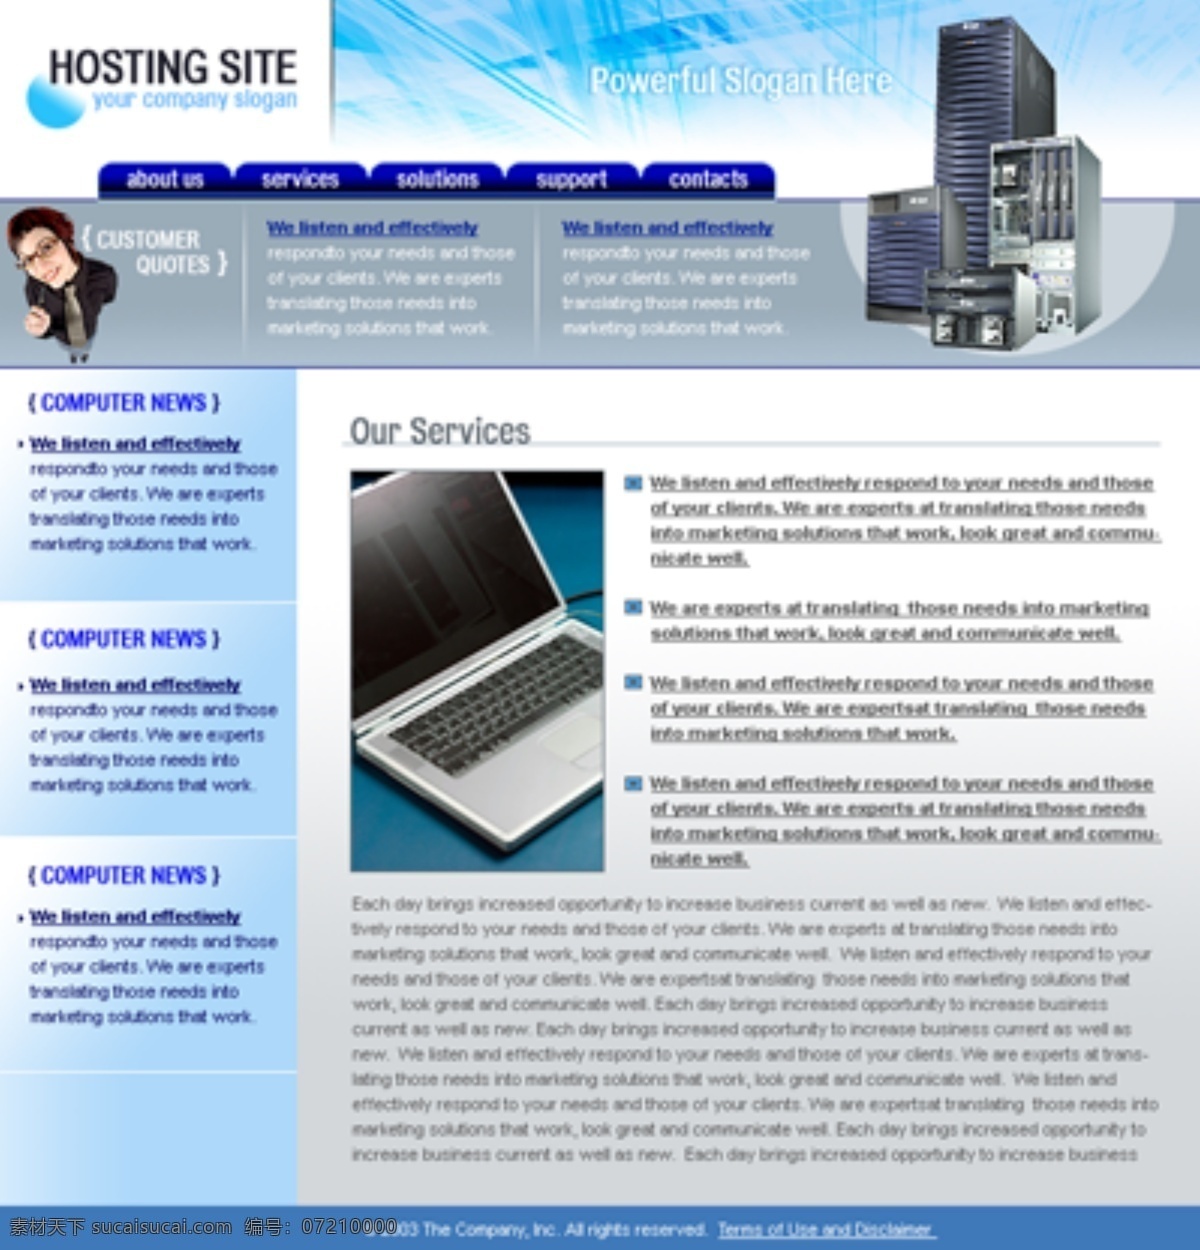 欧美模板 欧美网页模板 企业网站模板 网页模板 网站模板 源文件 欧美 分层 英文网页模板 网页素材